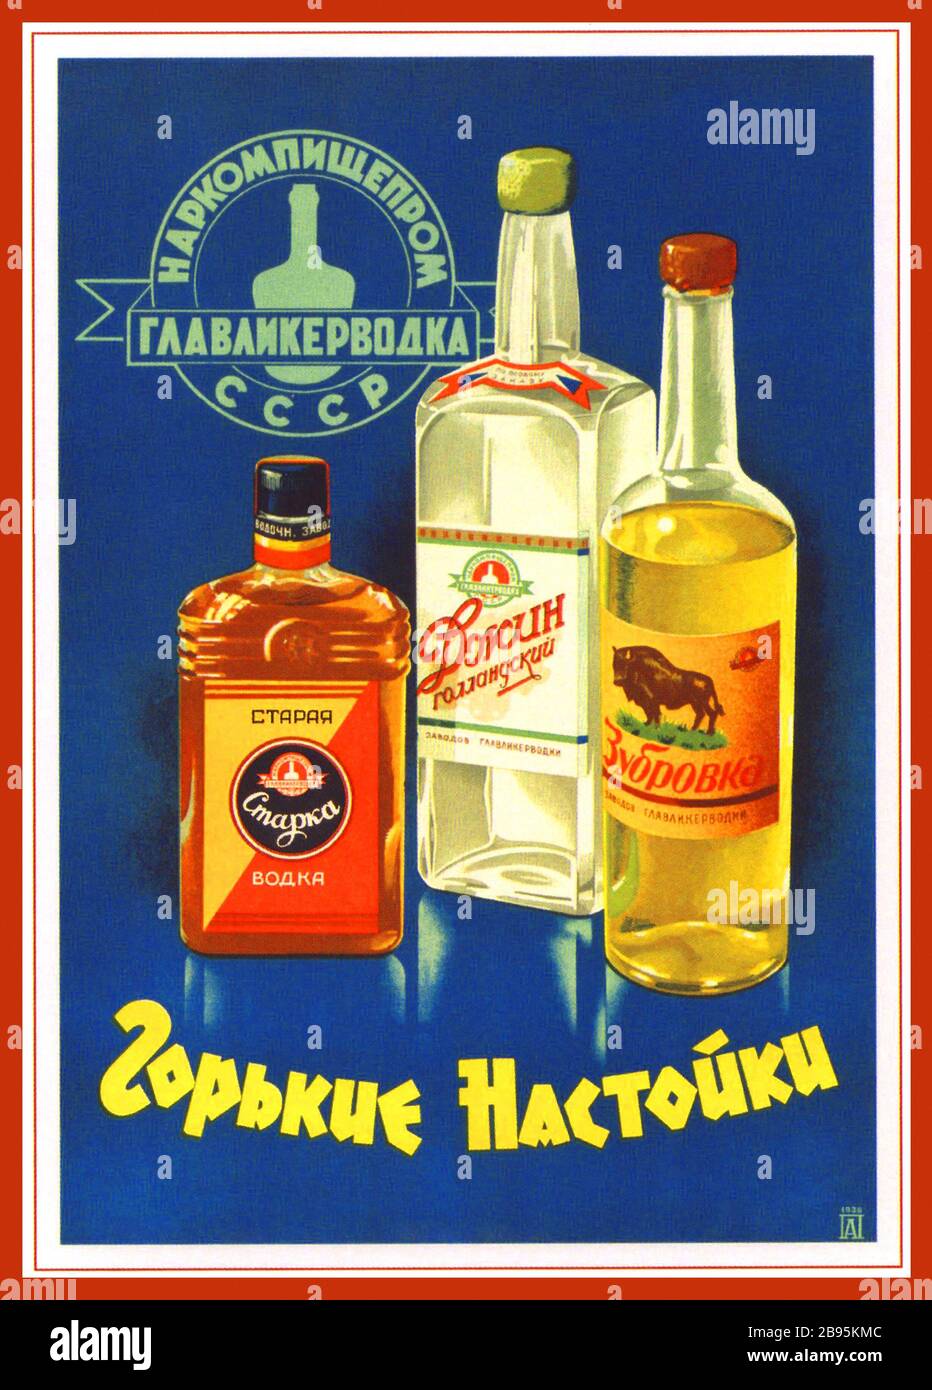 VODKA URSS RUSSE MILLÉSIME des années 1930 Imprimer Publicité en URSS Publicité vodka en URSS RÉTRO URSS BOISSONS ALCOOLISÉES SOVIÉTIQUES CCCP Banque D'Images